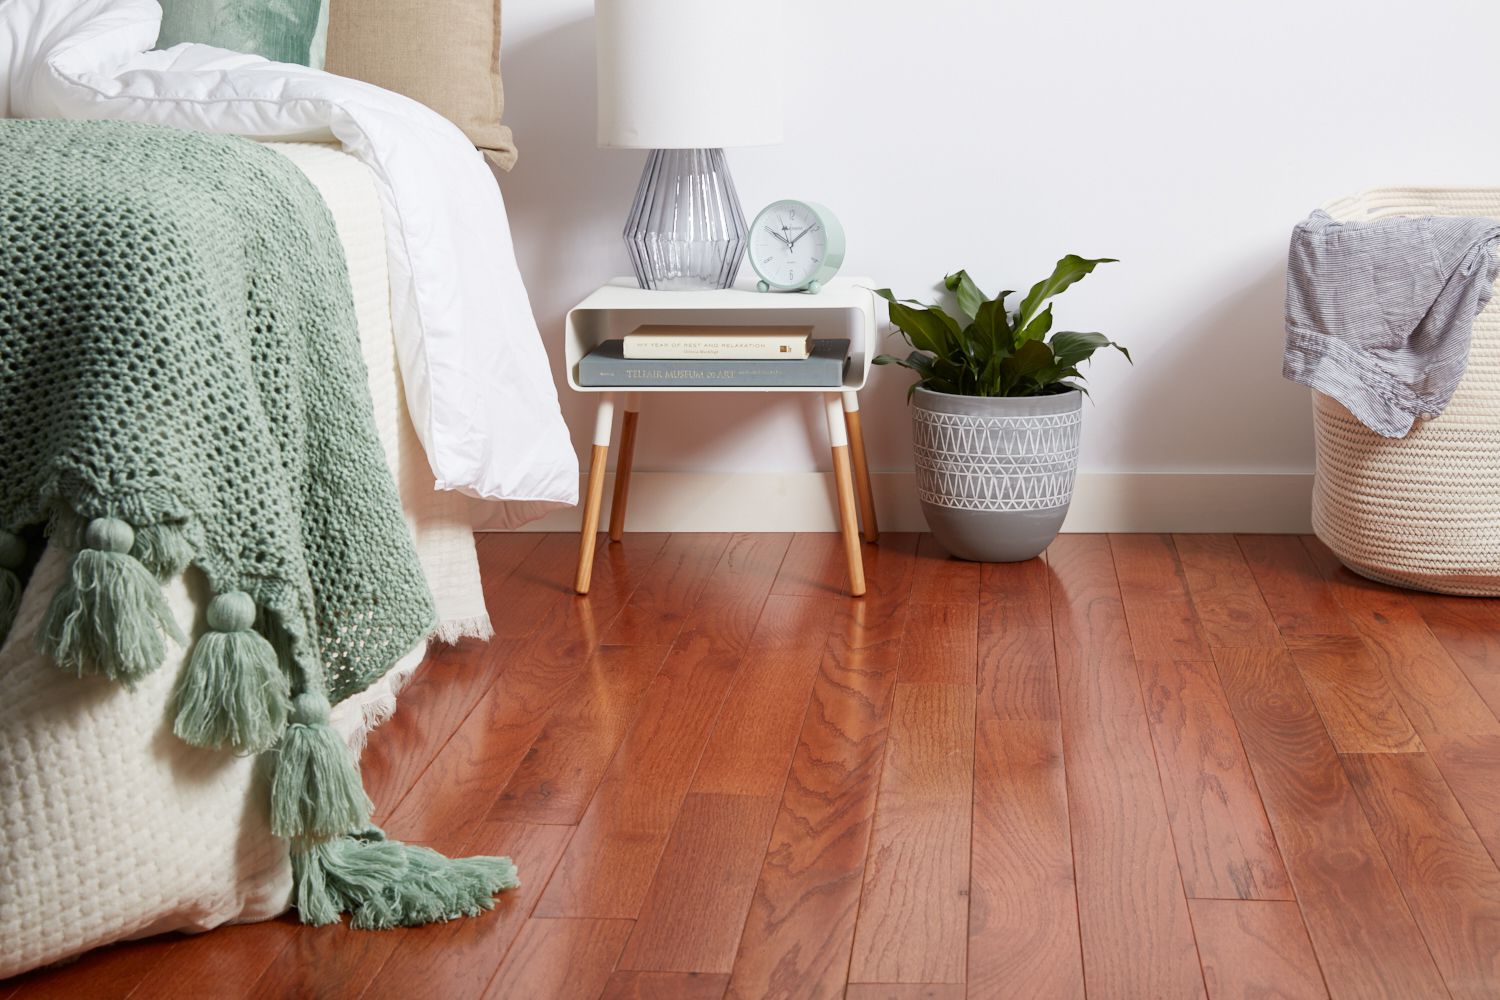 Tại sao nên lựa chọn sàn gỗ tự nhiên thay vì sàn gỗ công nghiệp